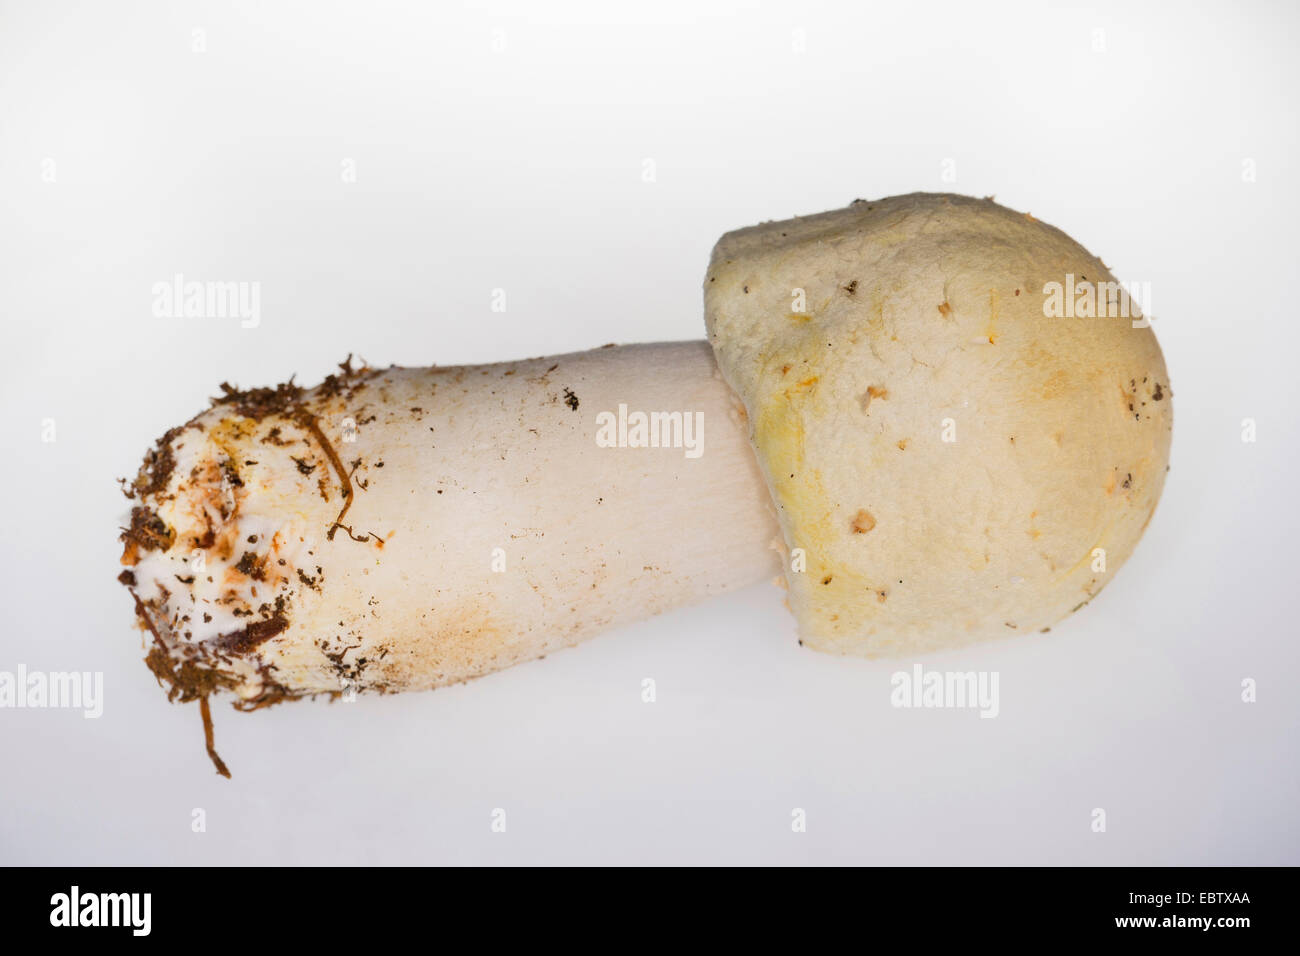 Cavallo (funghi Agaricus arvense, Psalliota arvense), corpo fruttifero di fronte a uno sfondo bianco, Germania Foto Stock